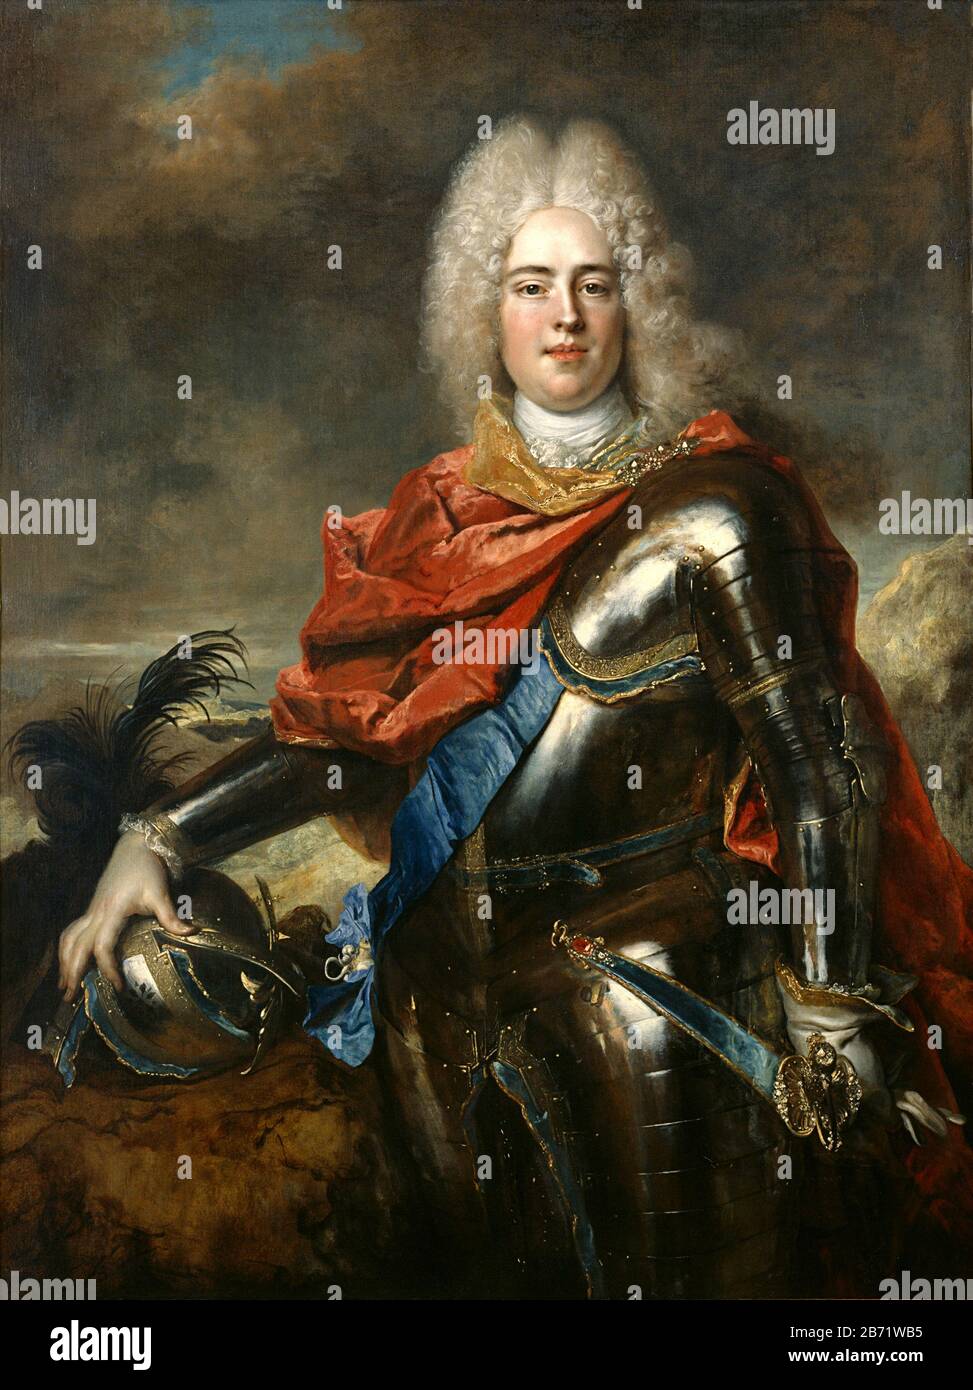 Portrait d'Auguste III de Pologne, Nicolas de Largillière Augustus III (1696 – 1763) Roi de Pologne et Grand-duc de Lituanie de 1734 à 1763, ainsi Que Électeur de Saxe dans le Saint Empire romain de 1733 à 1763 où il est connu sous le nom de Frederick Augustus II Banque D'Images